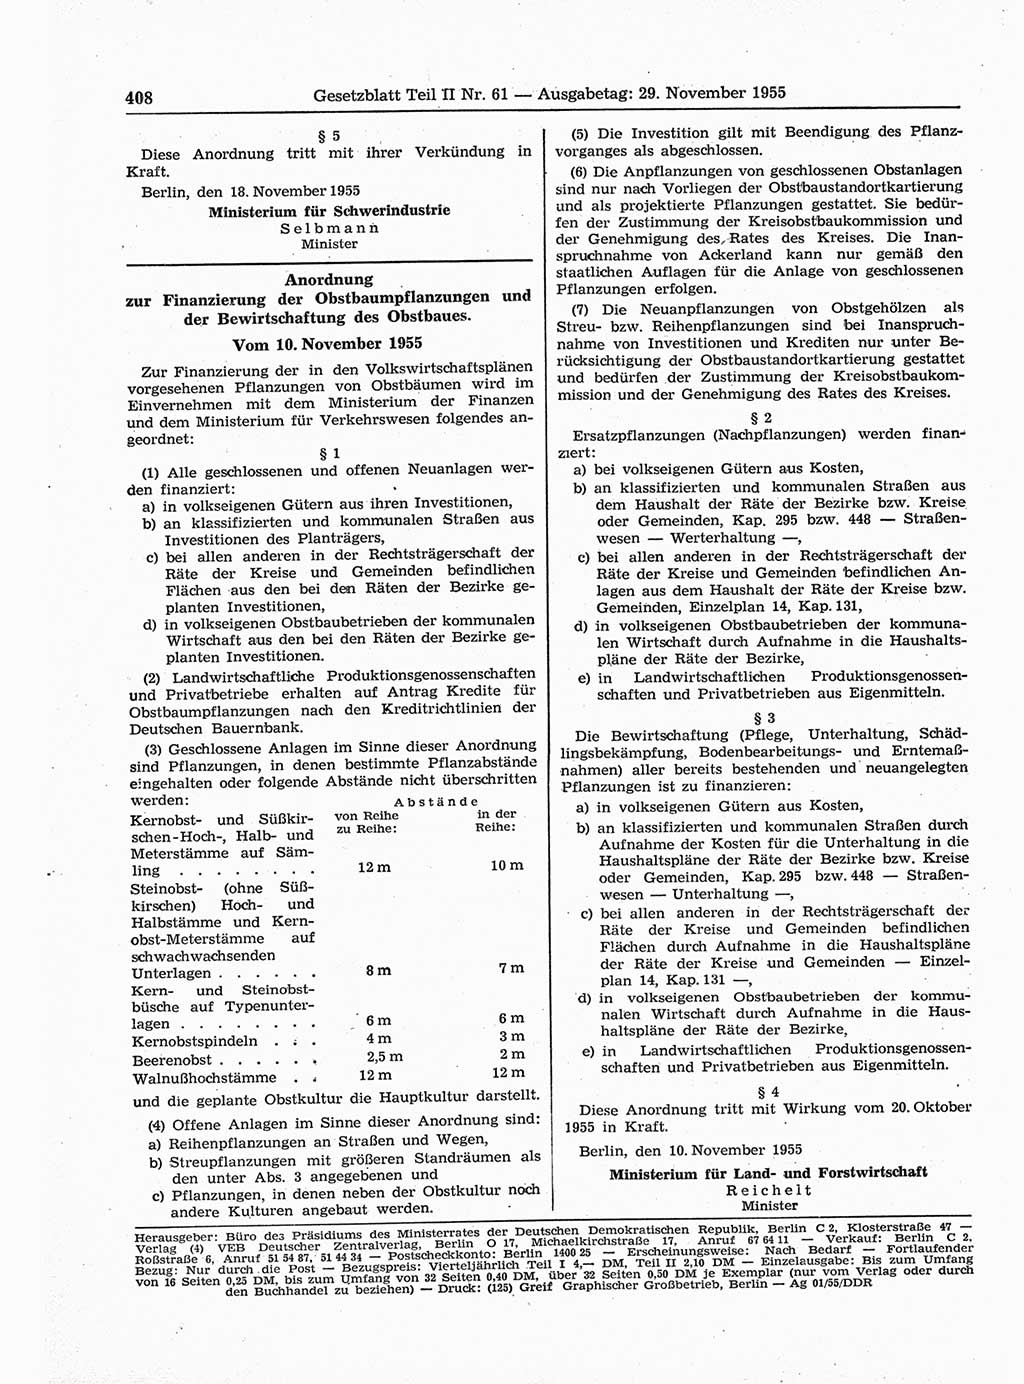 Gesetzblatt (GBl.) der Deutschen Demokratischen Republik (DDR) Teil ⅠⅠ 1955, Seite 408 (GBl. DDR ⅠⅠ 1955, S. 408)